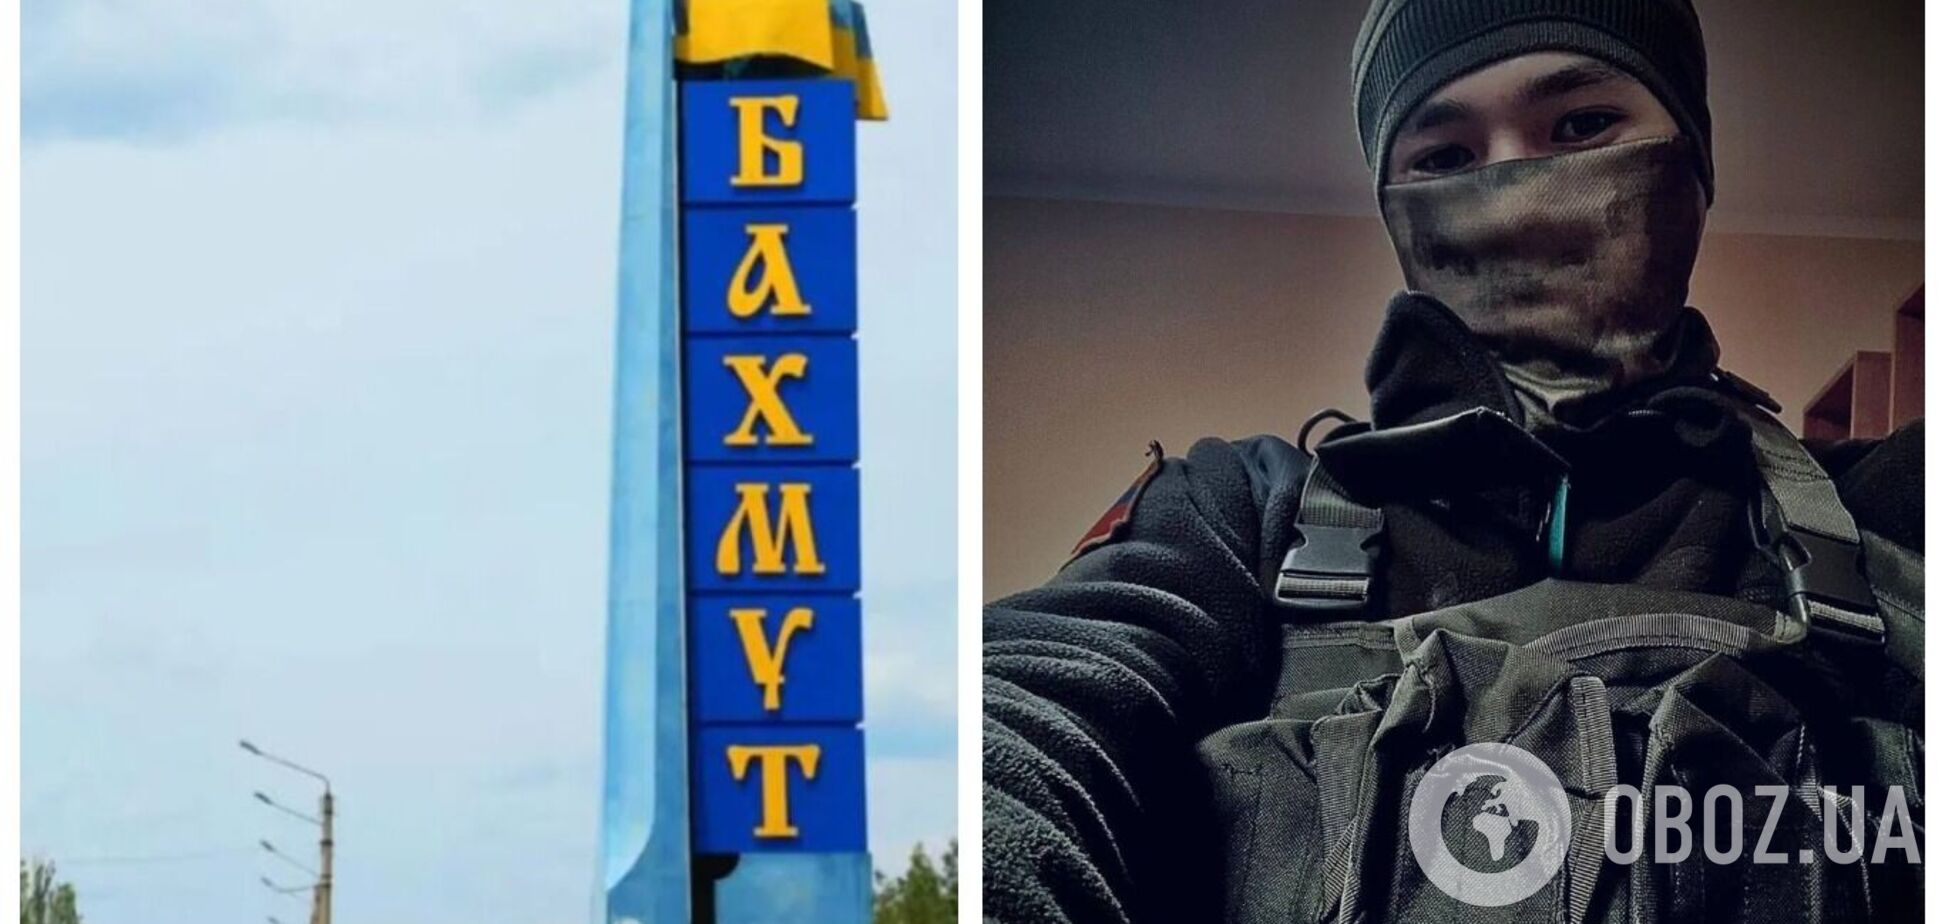 У районі Бахмута ліквідували колаборанта, який став 'зіркою' на росТБ: він розбив на відео герб України. Фото 